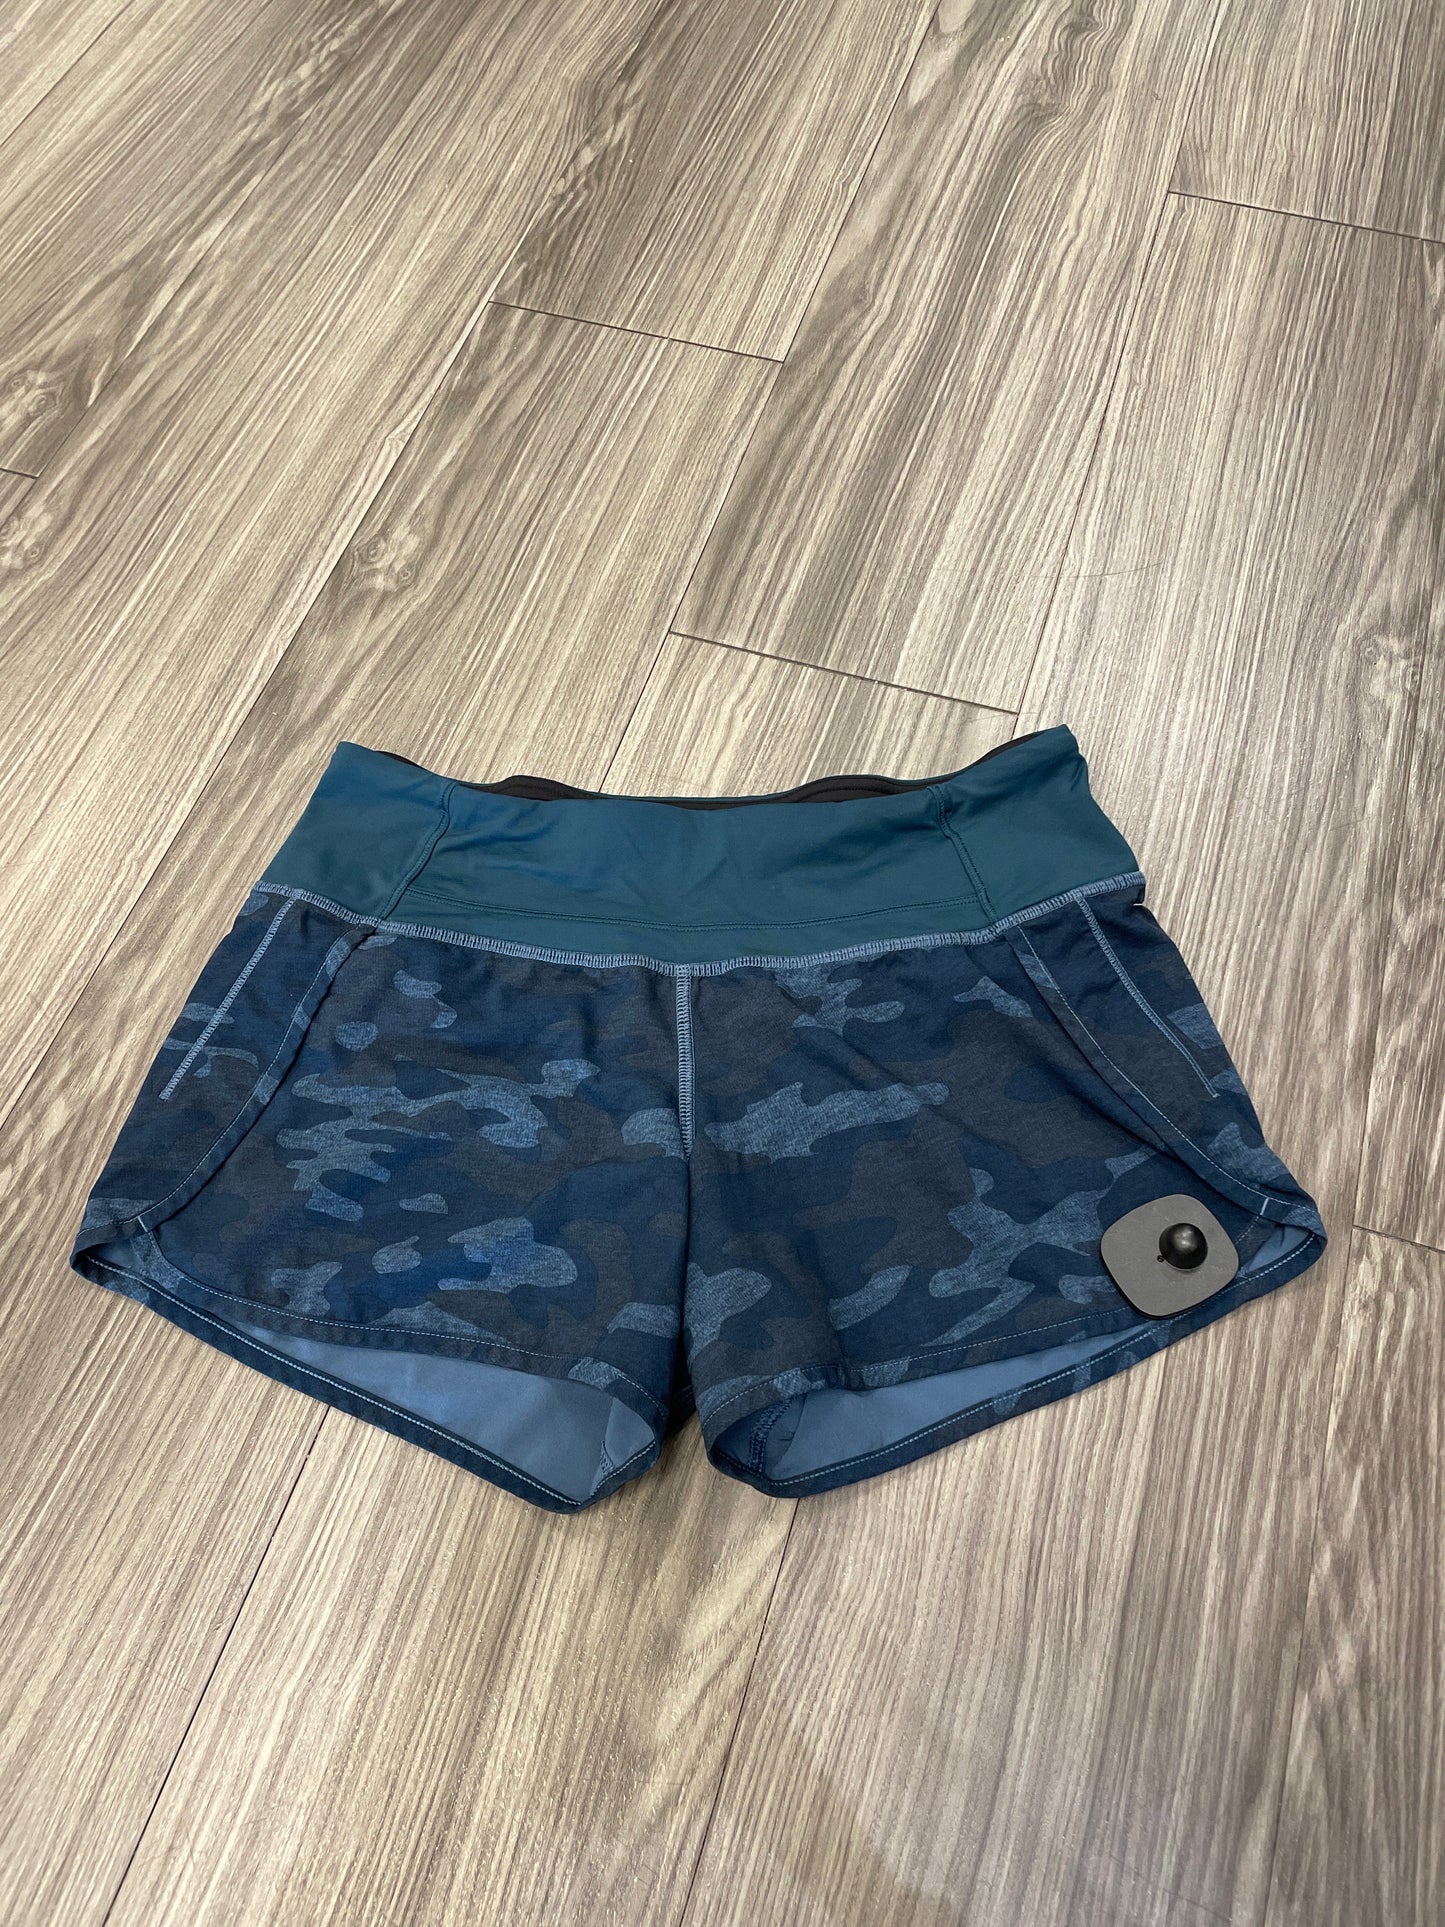 Blue Athletic Shorts Lululemon, Size 4